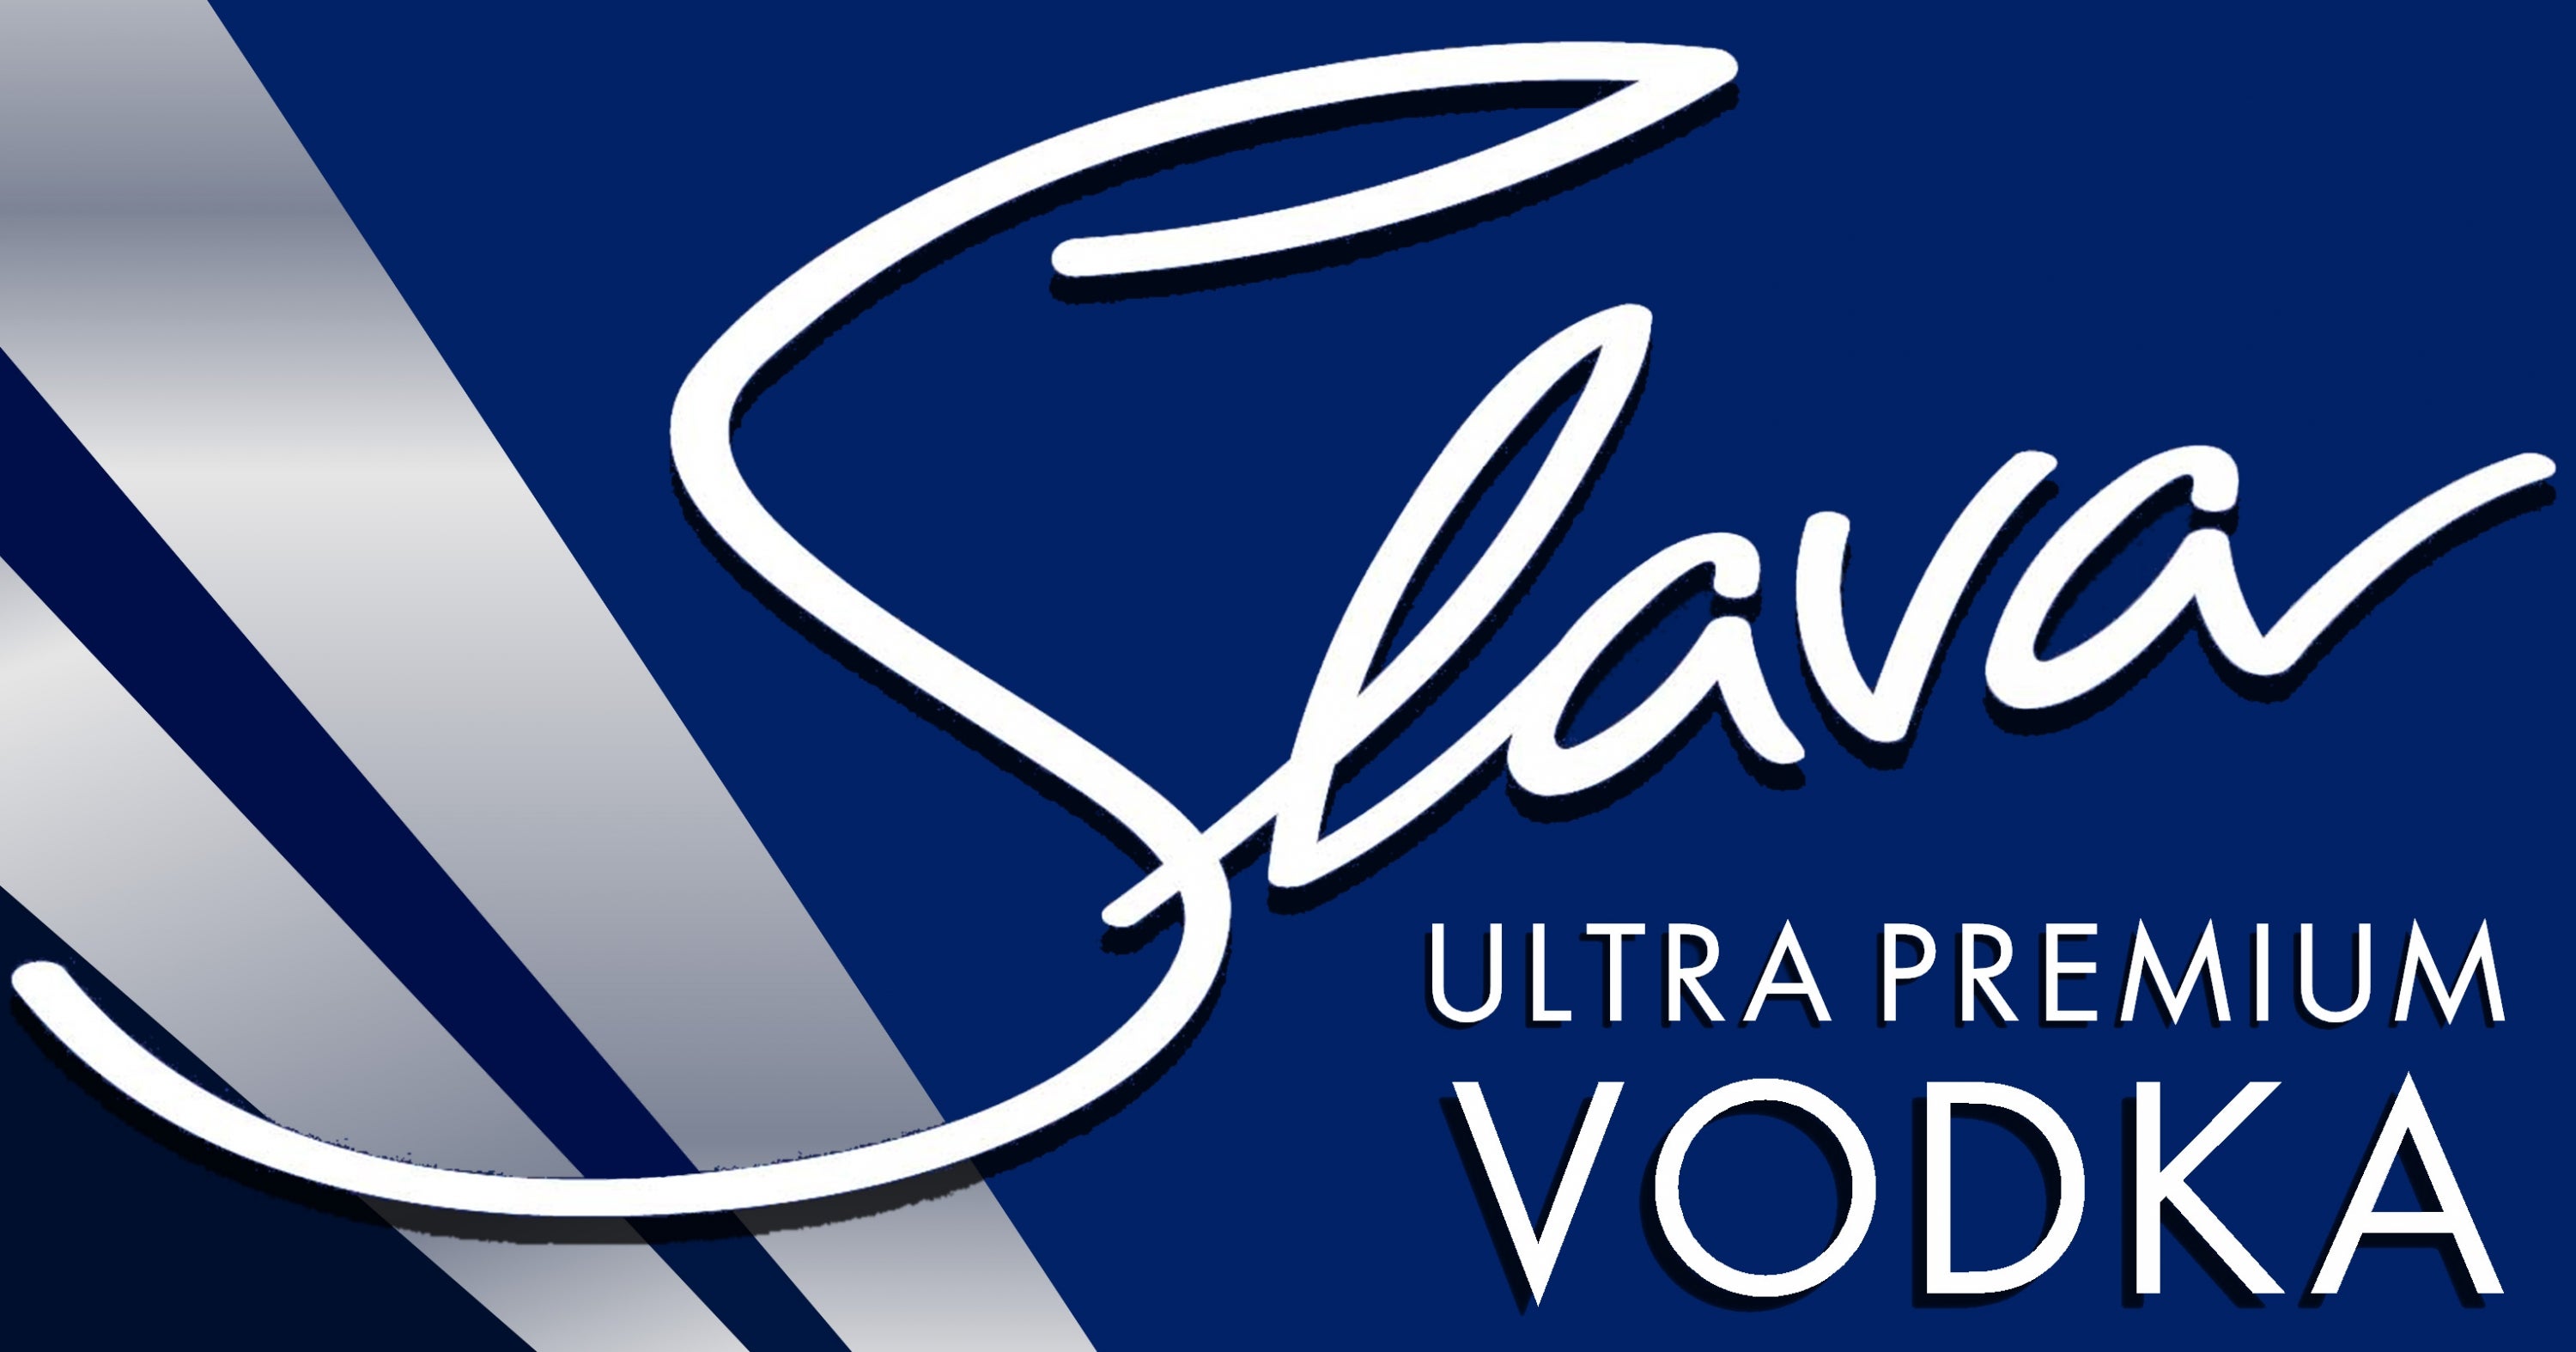 Slava Ultra Premium Vodka logo